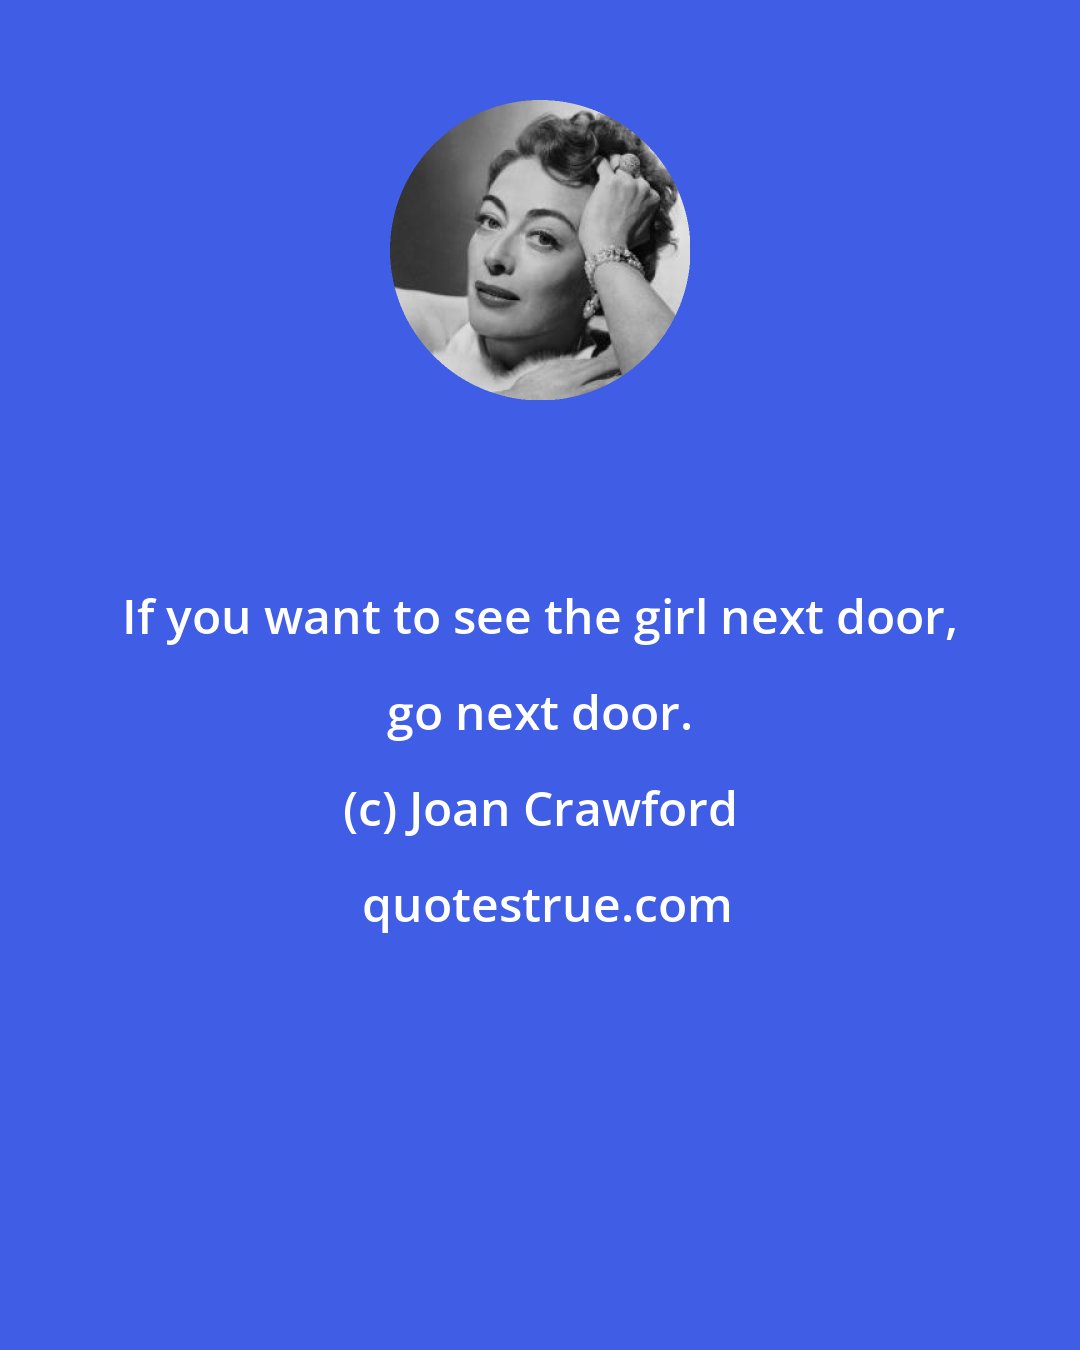 Joan Crawford: If you want to see the girl next door, go next door.